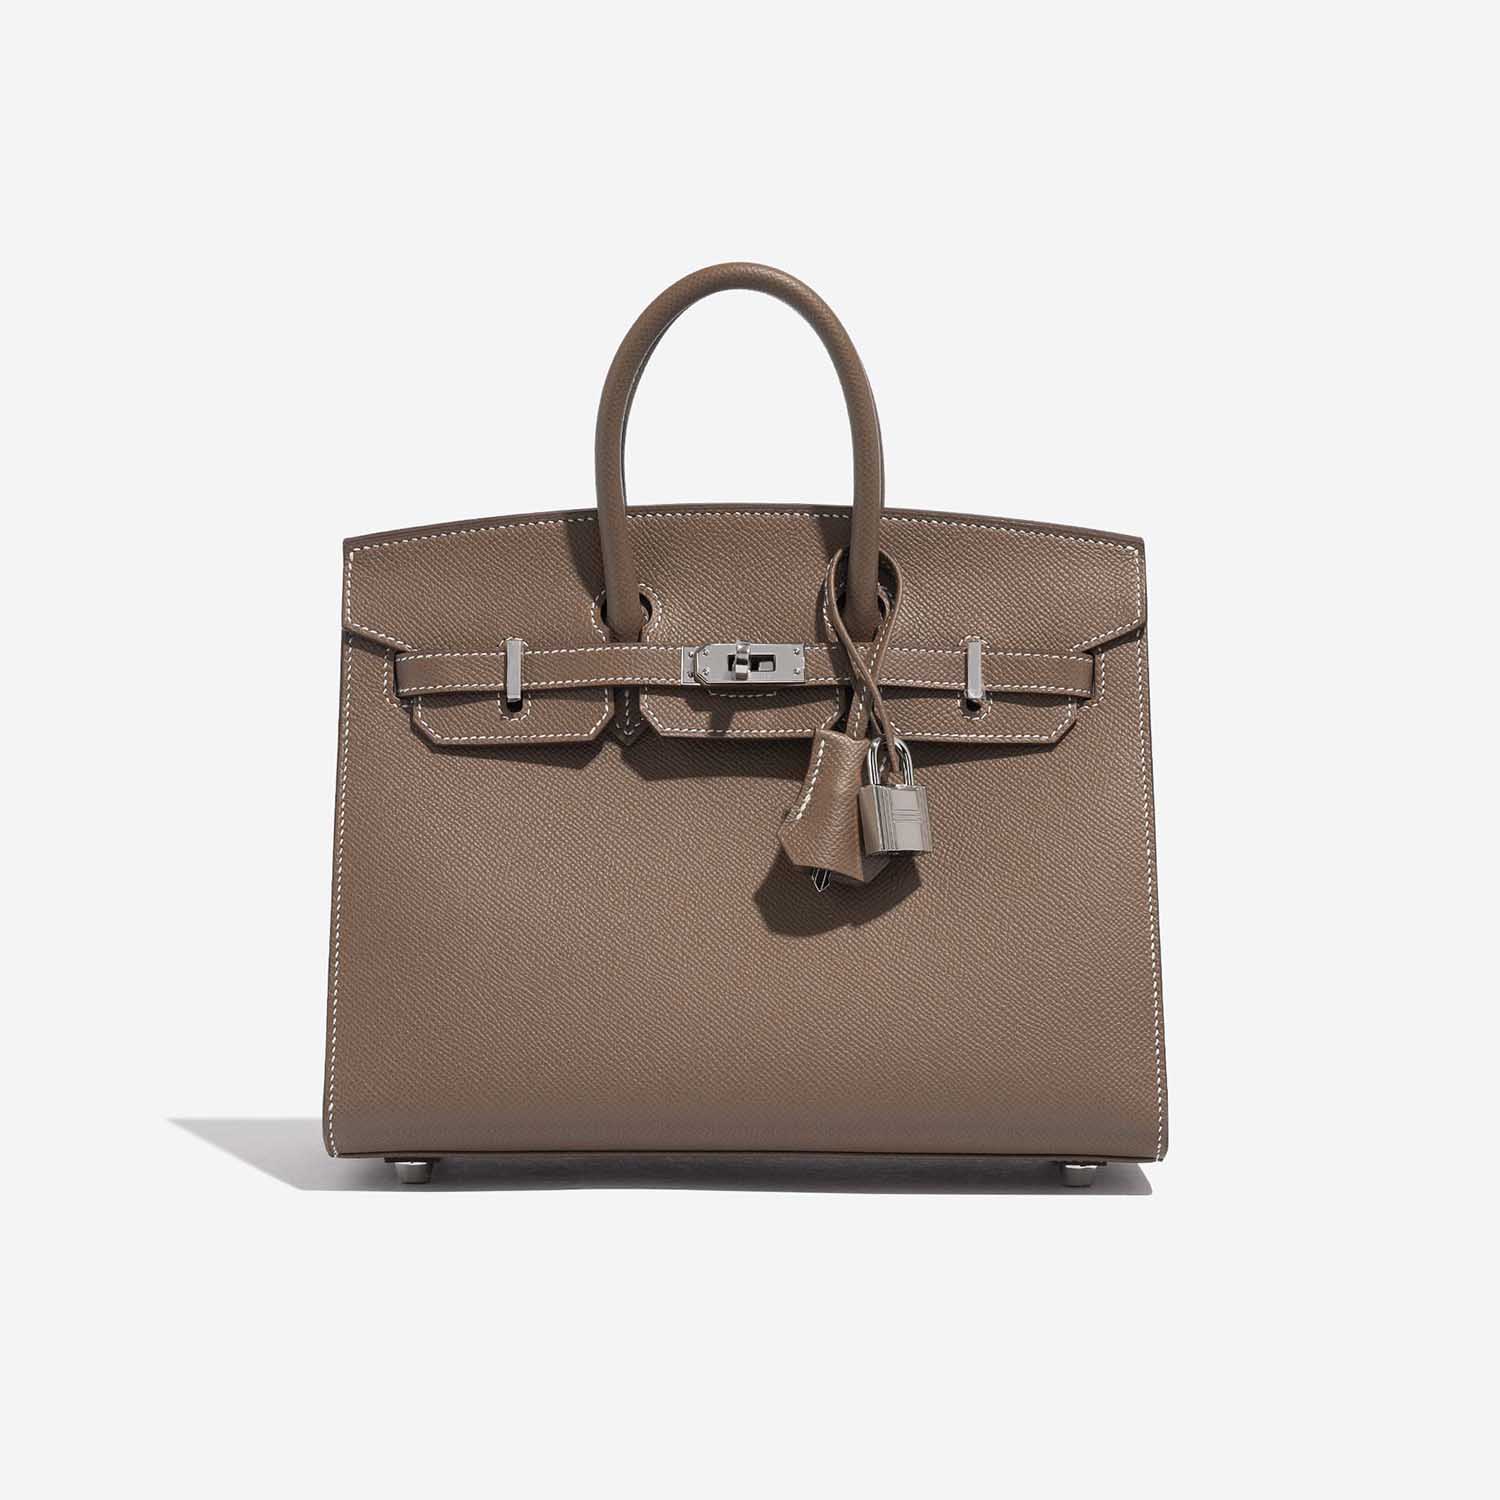 Pre-owned Hermès Tasche Birkin 25 Epsom Etoupe Brown Front | Verkaufen Sie Ihre Designer-Tasche auf Saclab.com